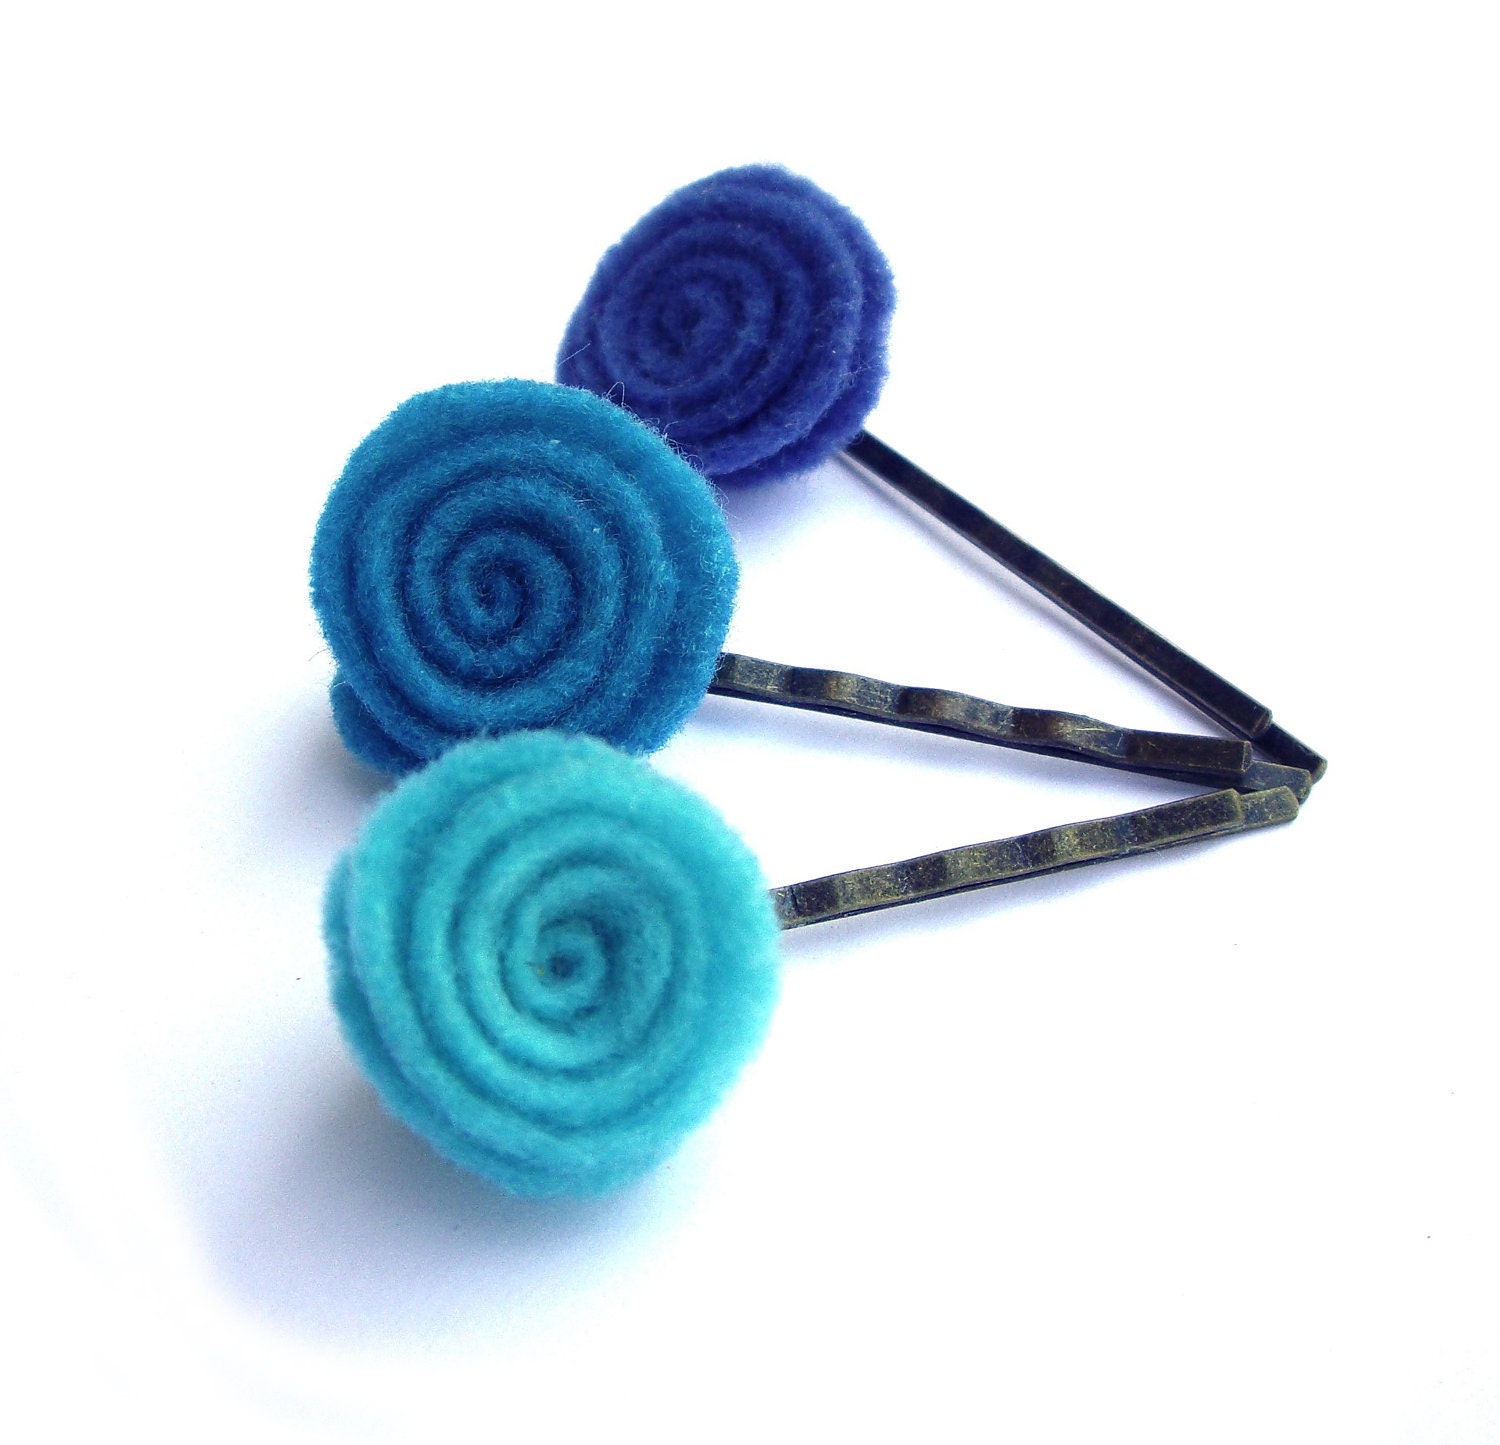 Felt Hair pins light turquoise, turquoise, blue, flower swirl Set of 3 bobby pins